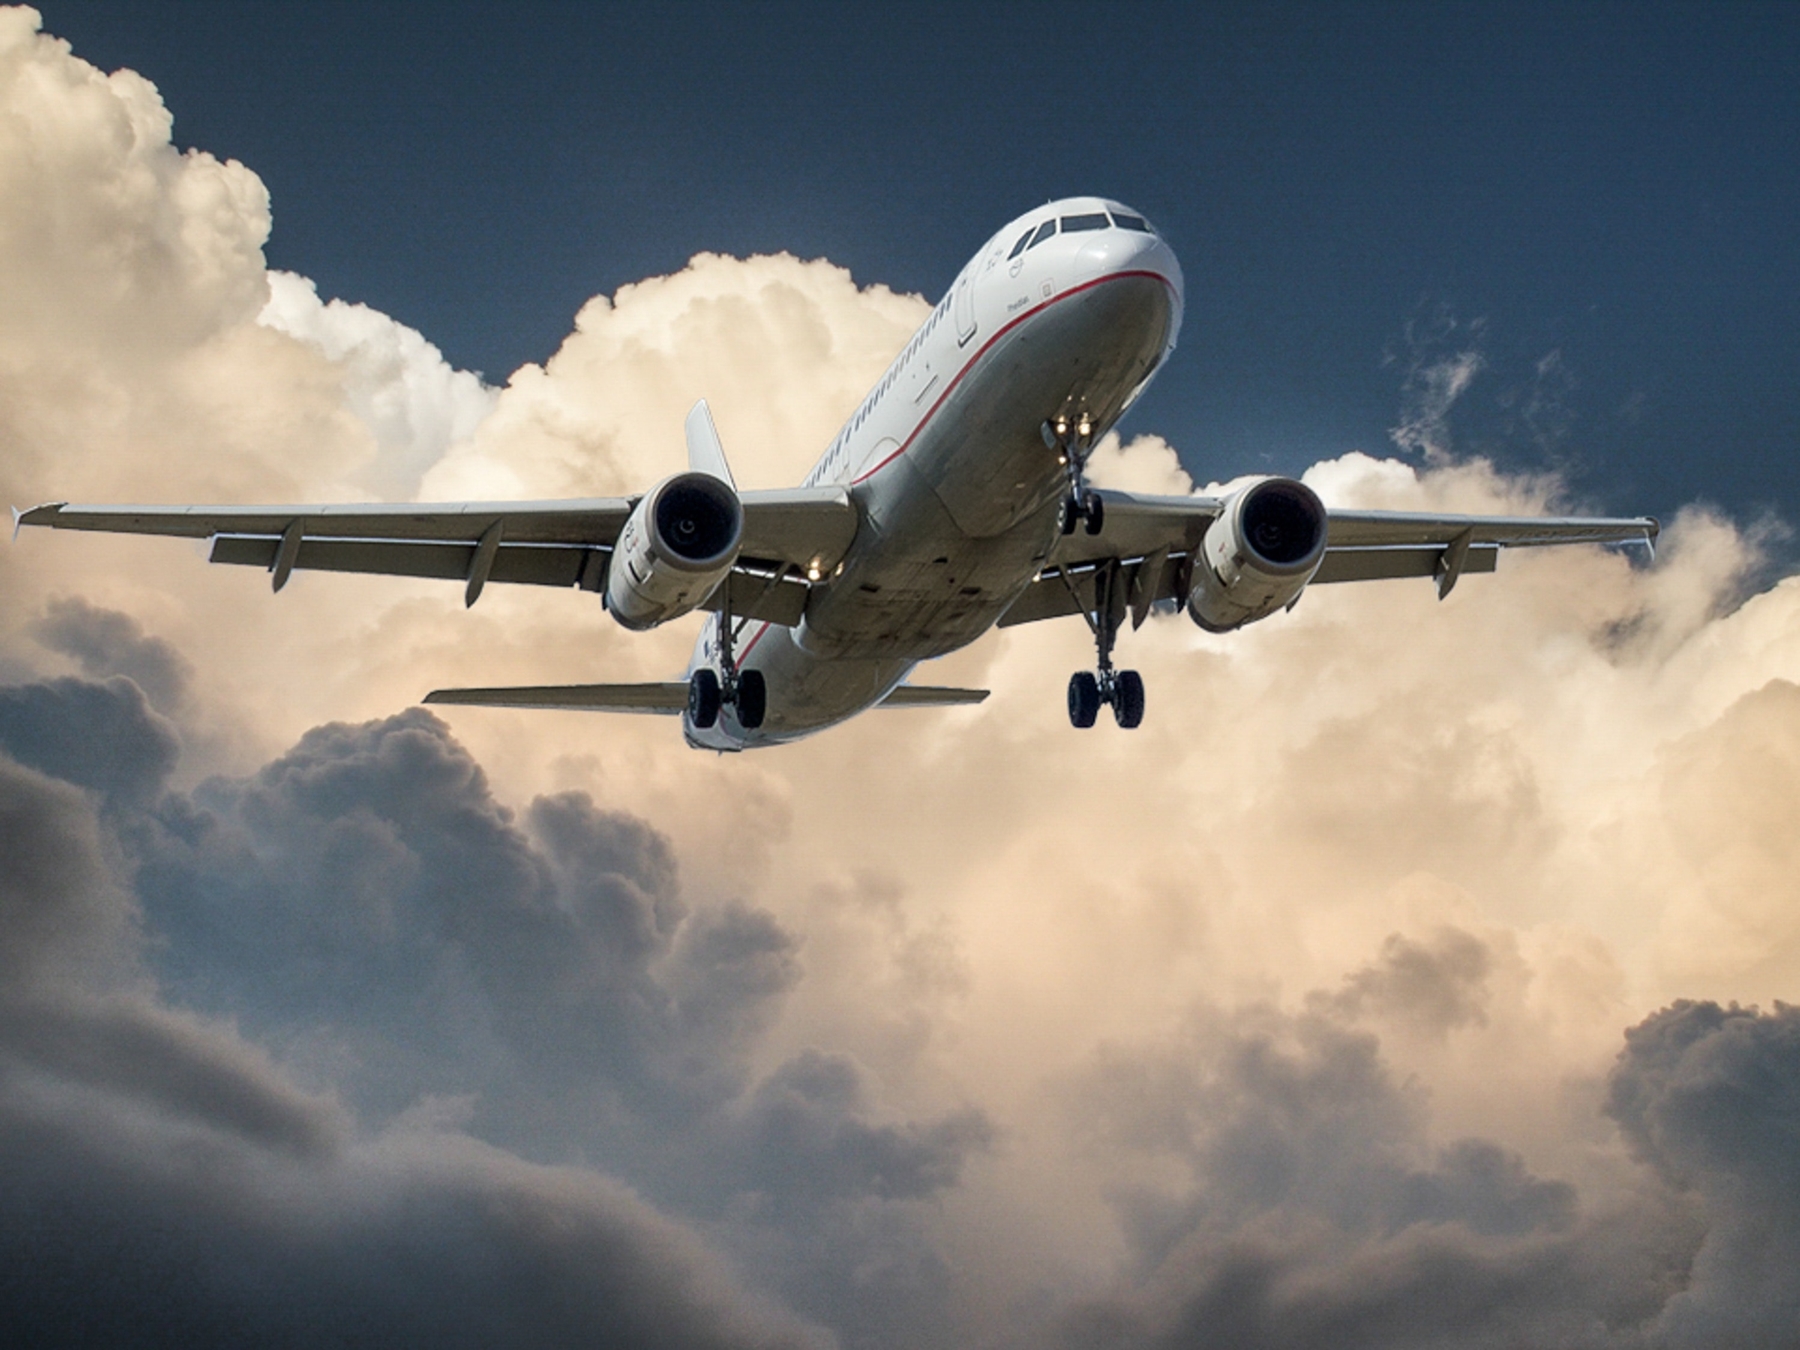 Ποια είναι η ασφαλέστερη θέση για έναν επιβάτη αεροπλάνου σε περίπτωση ατυχήματος; – Τι λένε οι ειδικοί (φώτο)